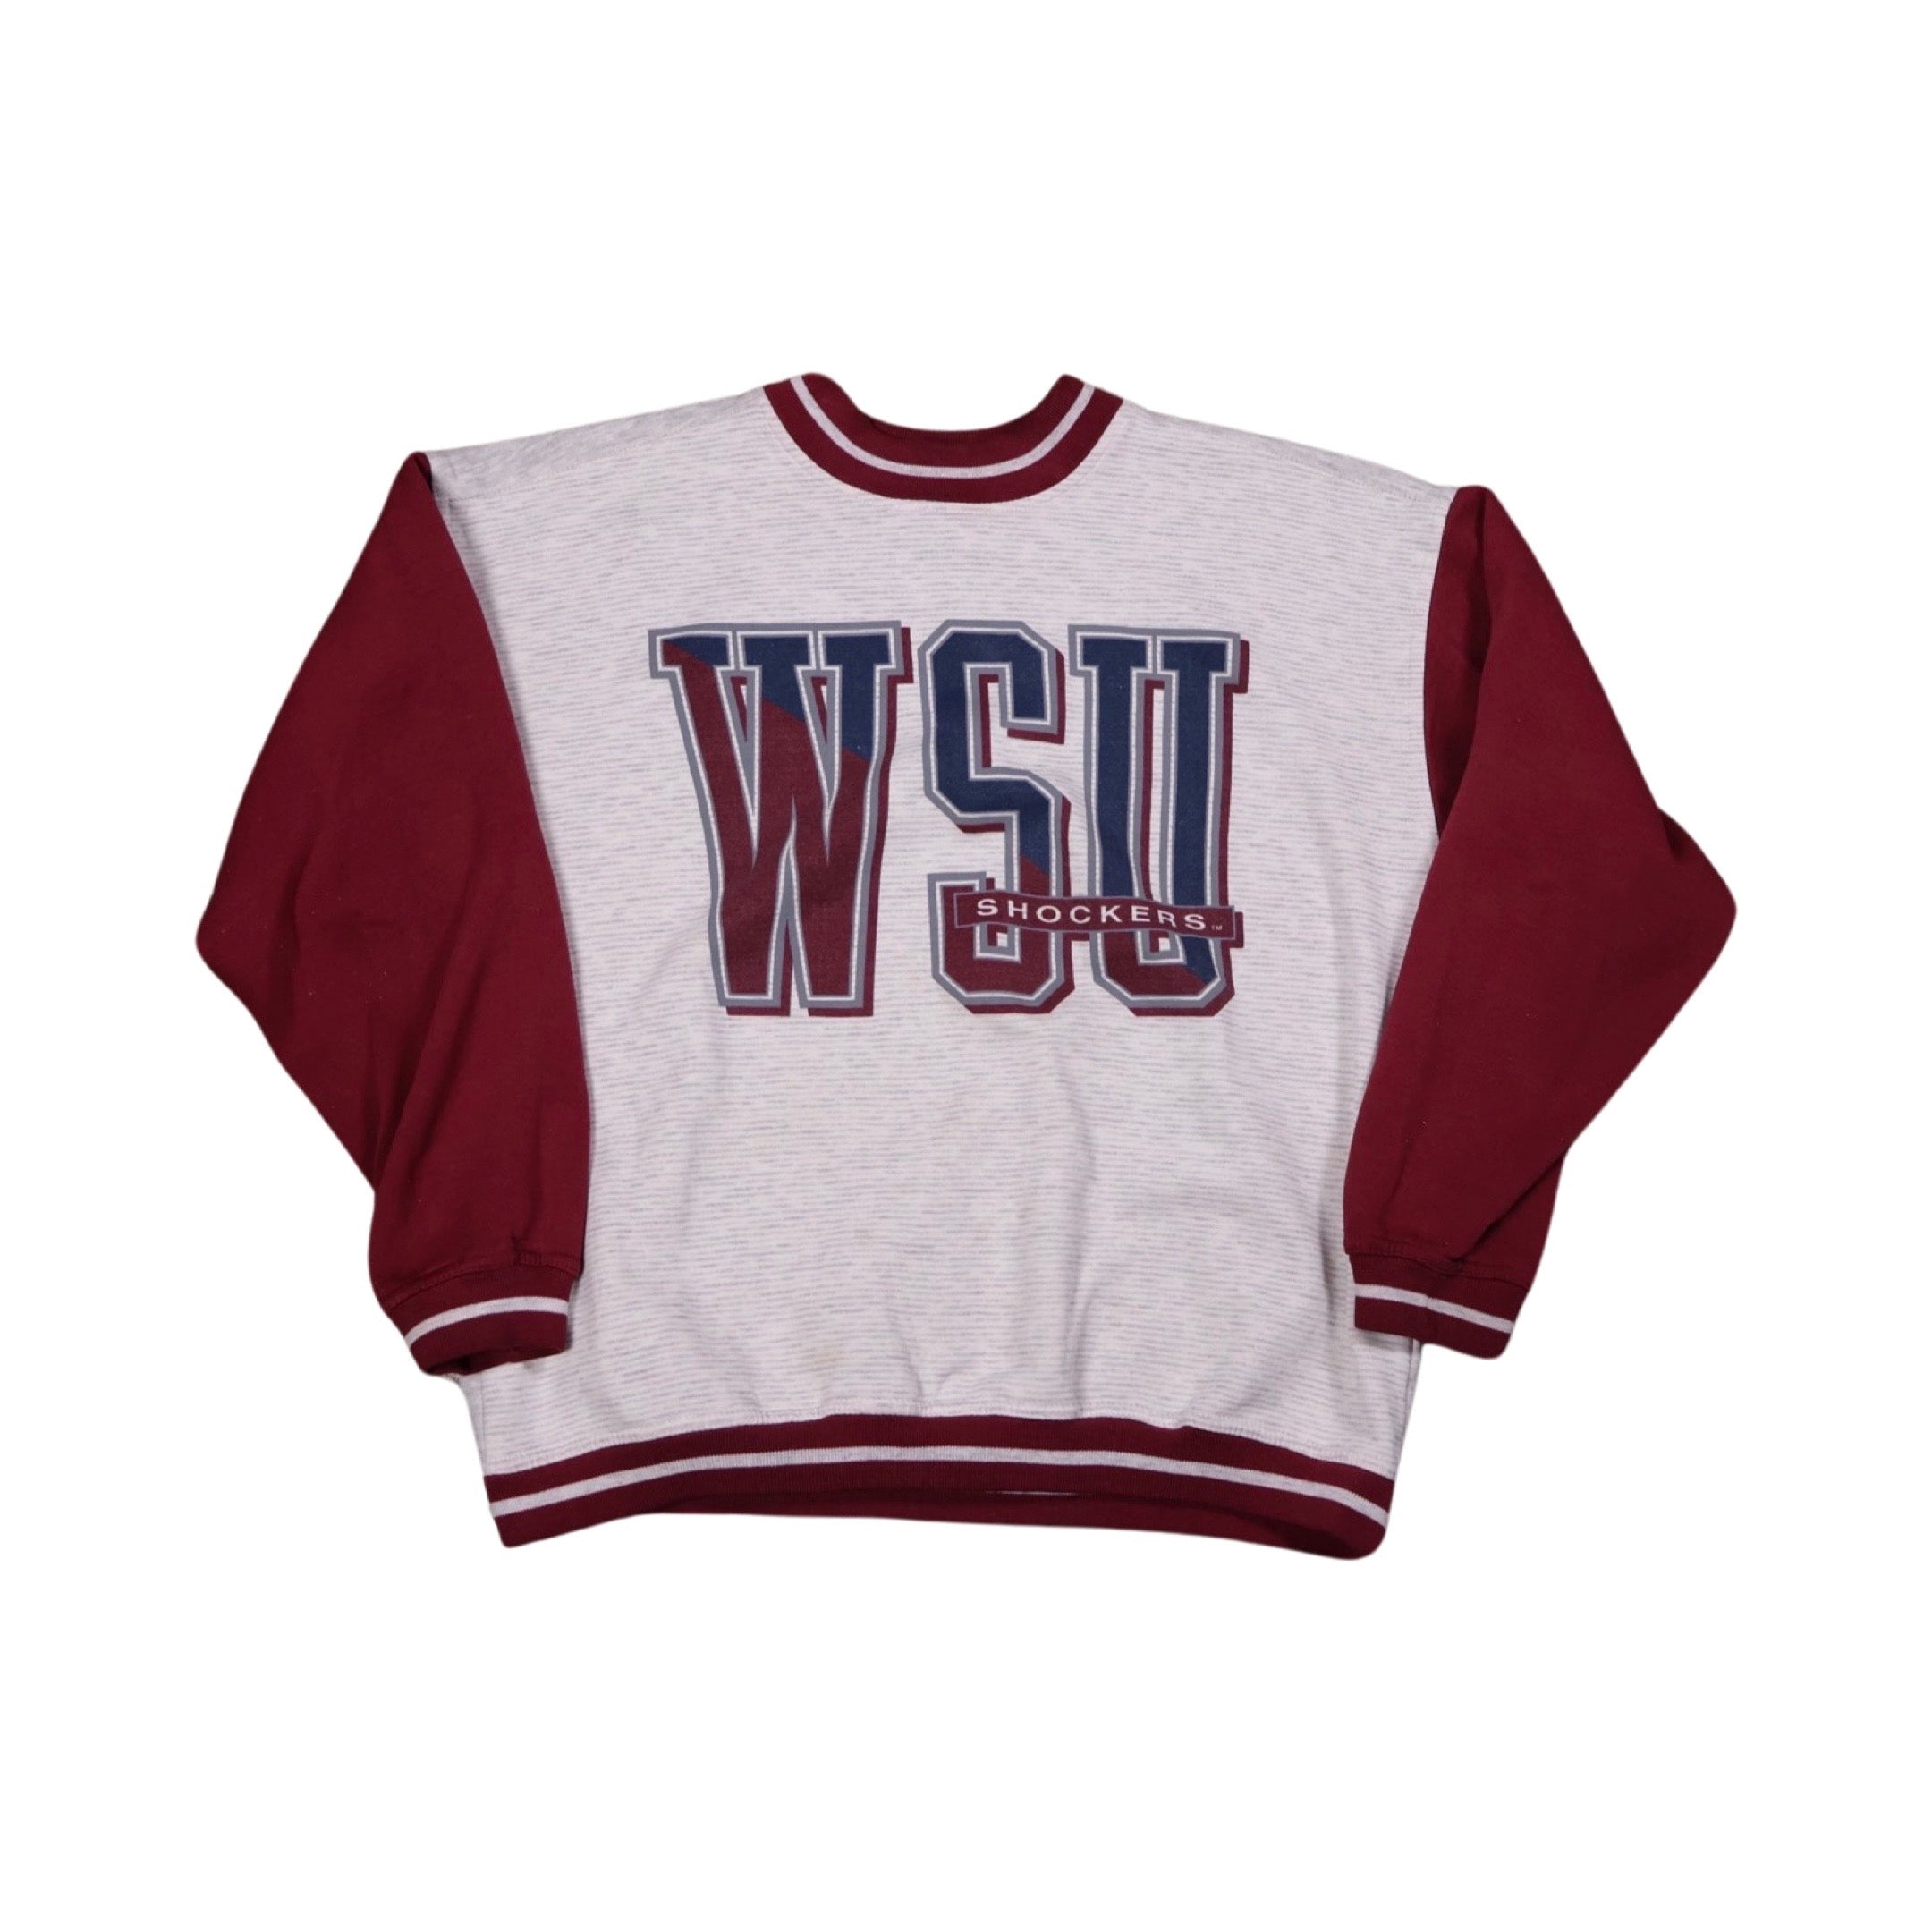 Wichita State Shockers 90s Sweater (Medium)